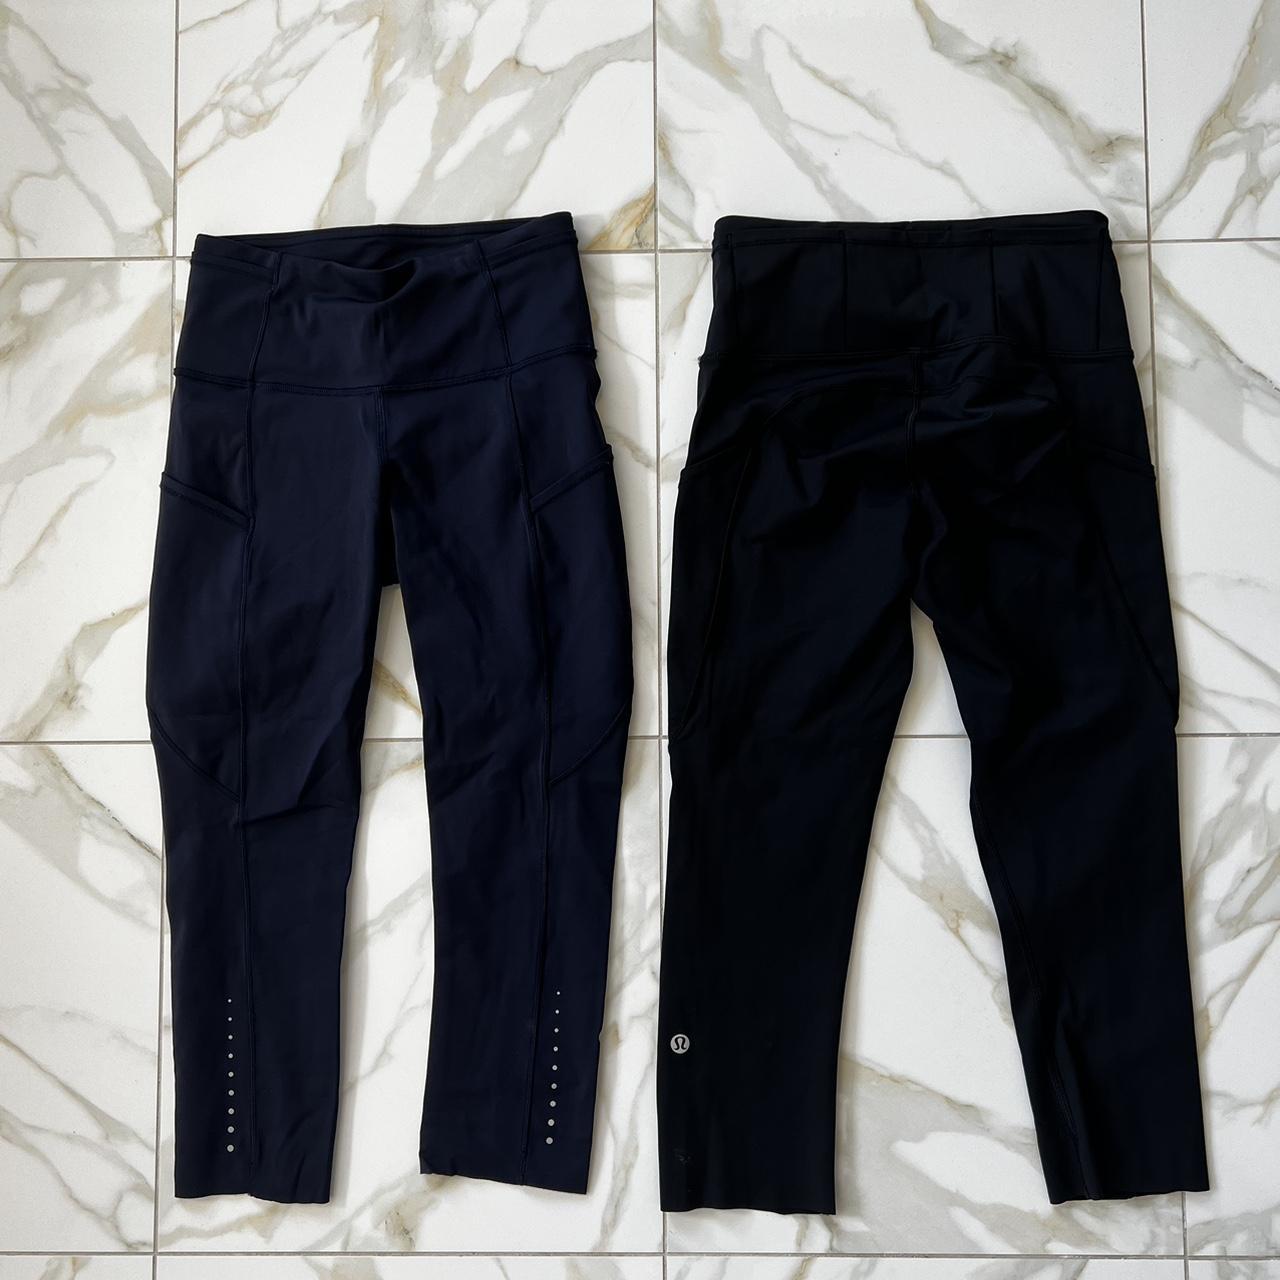 lululemon leggings - size 4 - black - side pockets - Depop